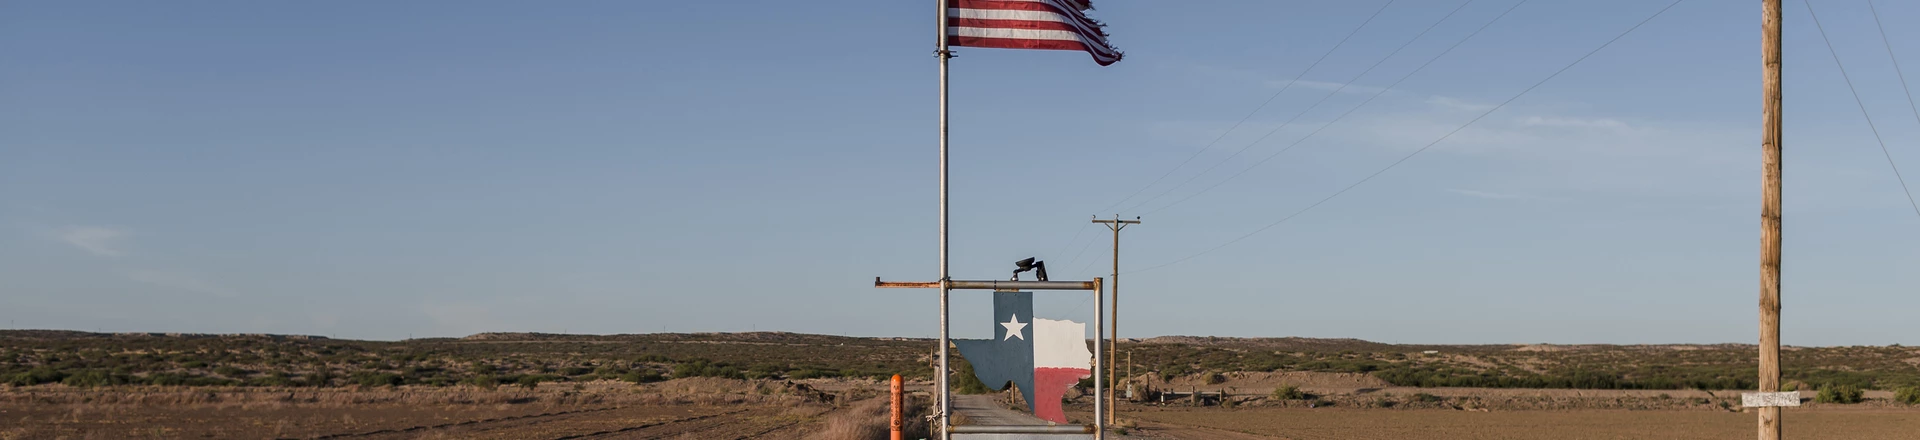 Bandeira em propriedade próxima ao muro que marca a fronteira entre os países Estados Unidos e México.